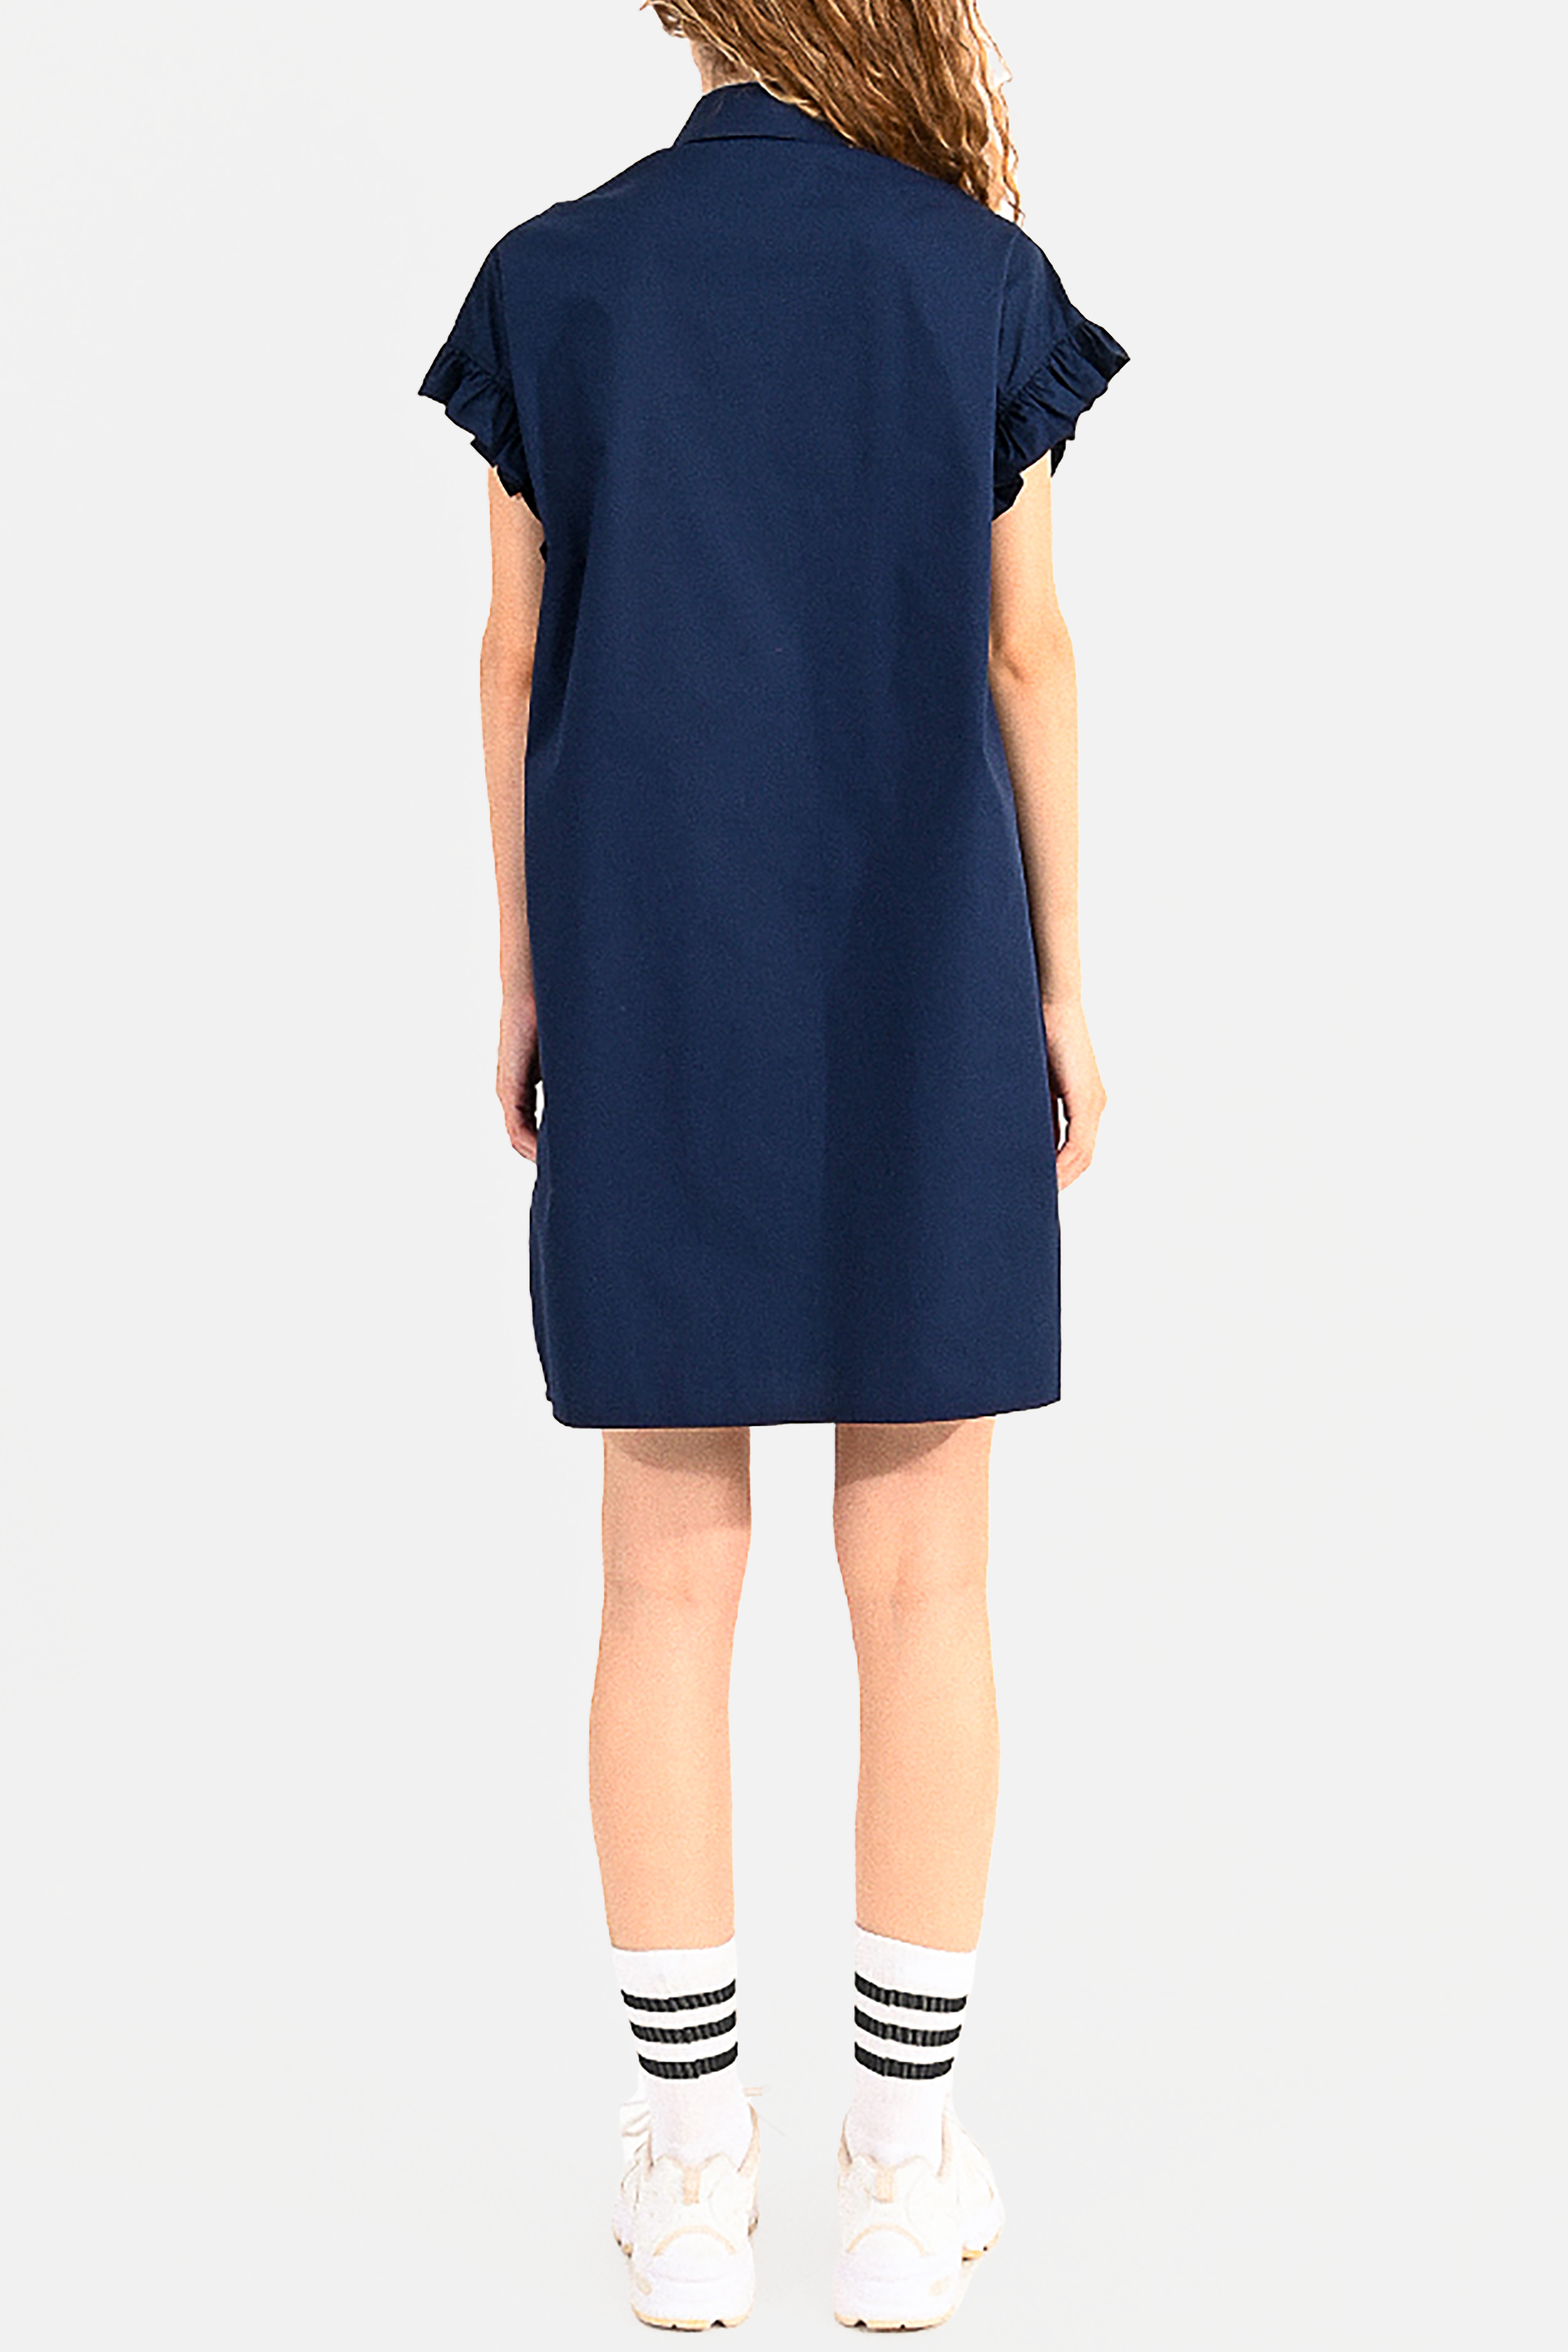 Minette Shirt Dress in Navy Blue